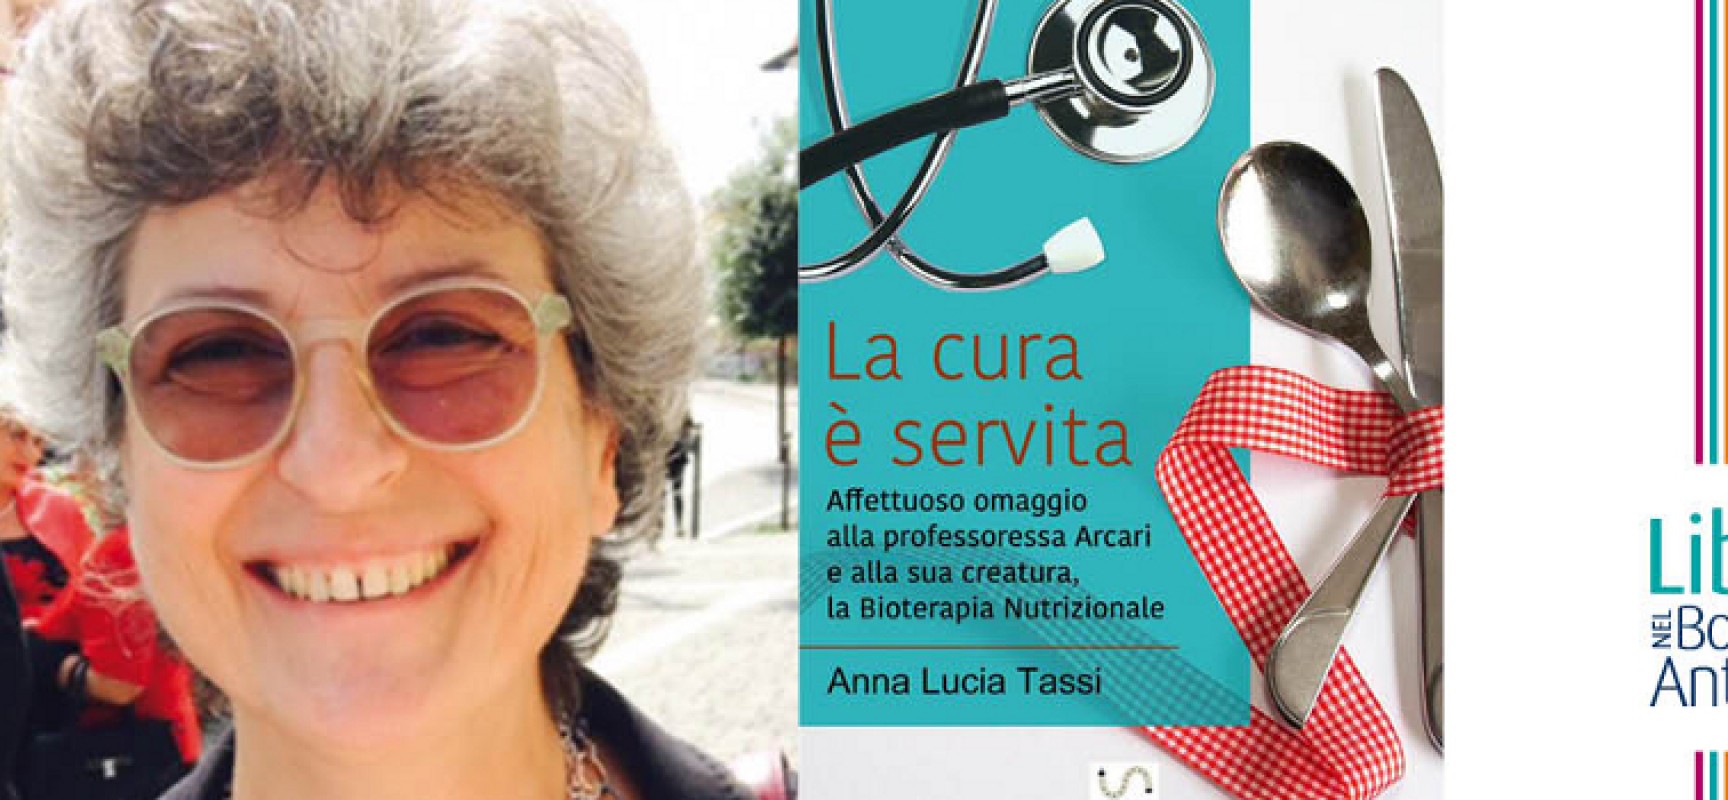 “La cura è servita”, la presentazione del libro di Anna Lucia Tassi al castello svevo